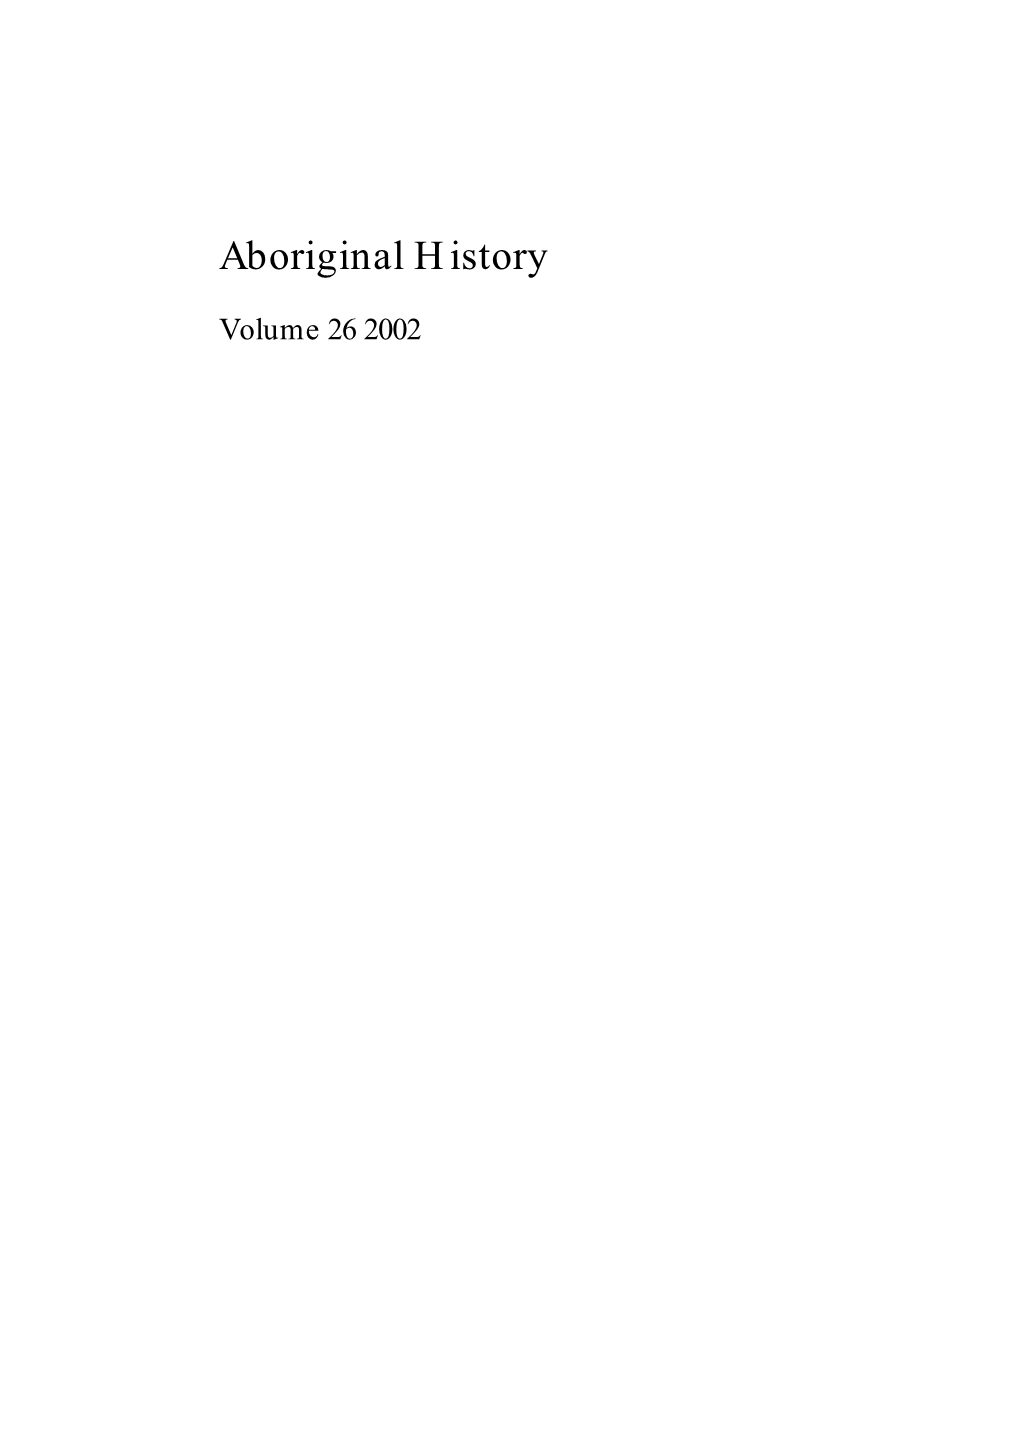 Aboriginal History, Vol. 26